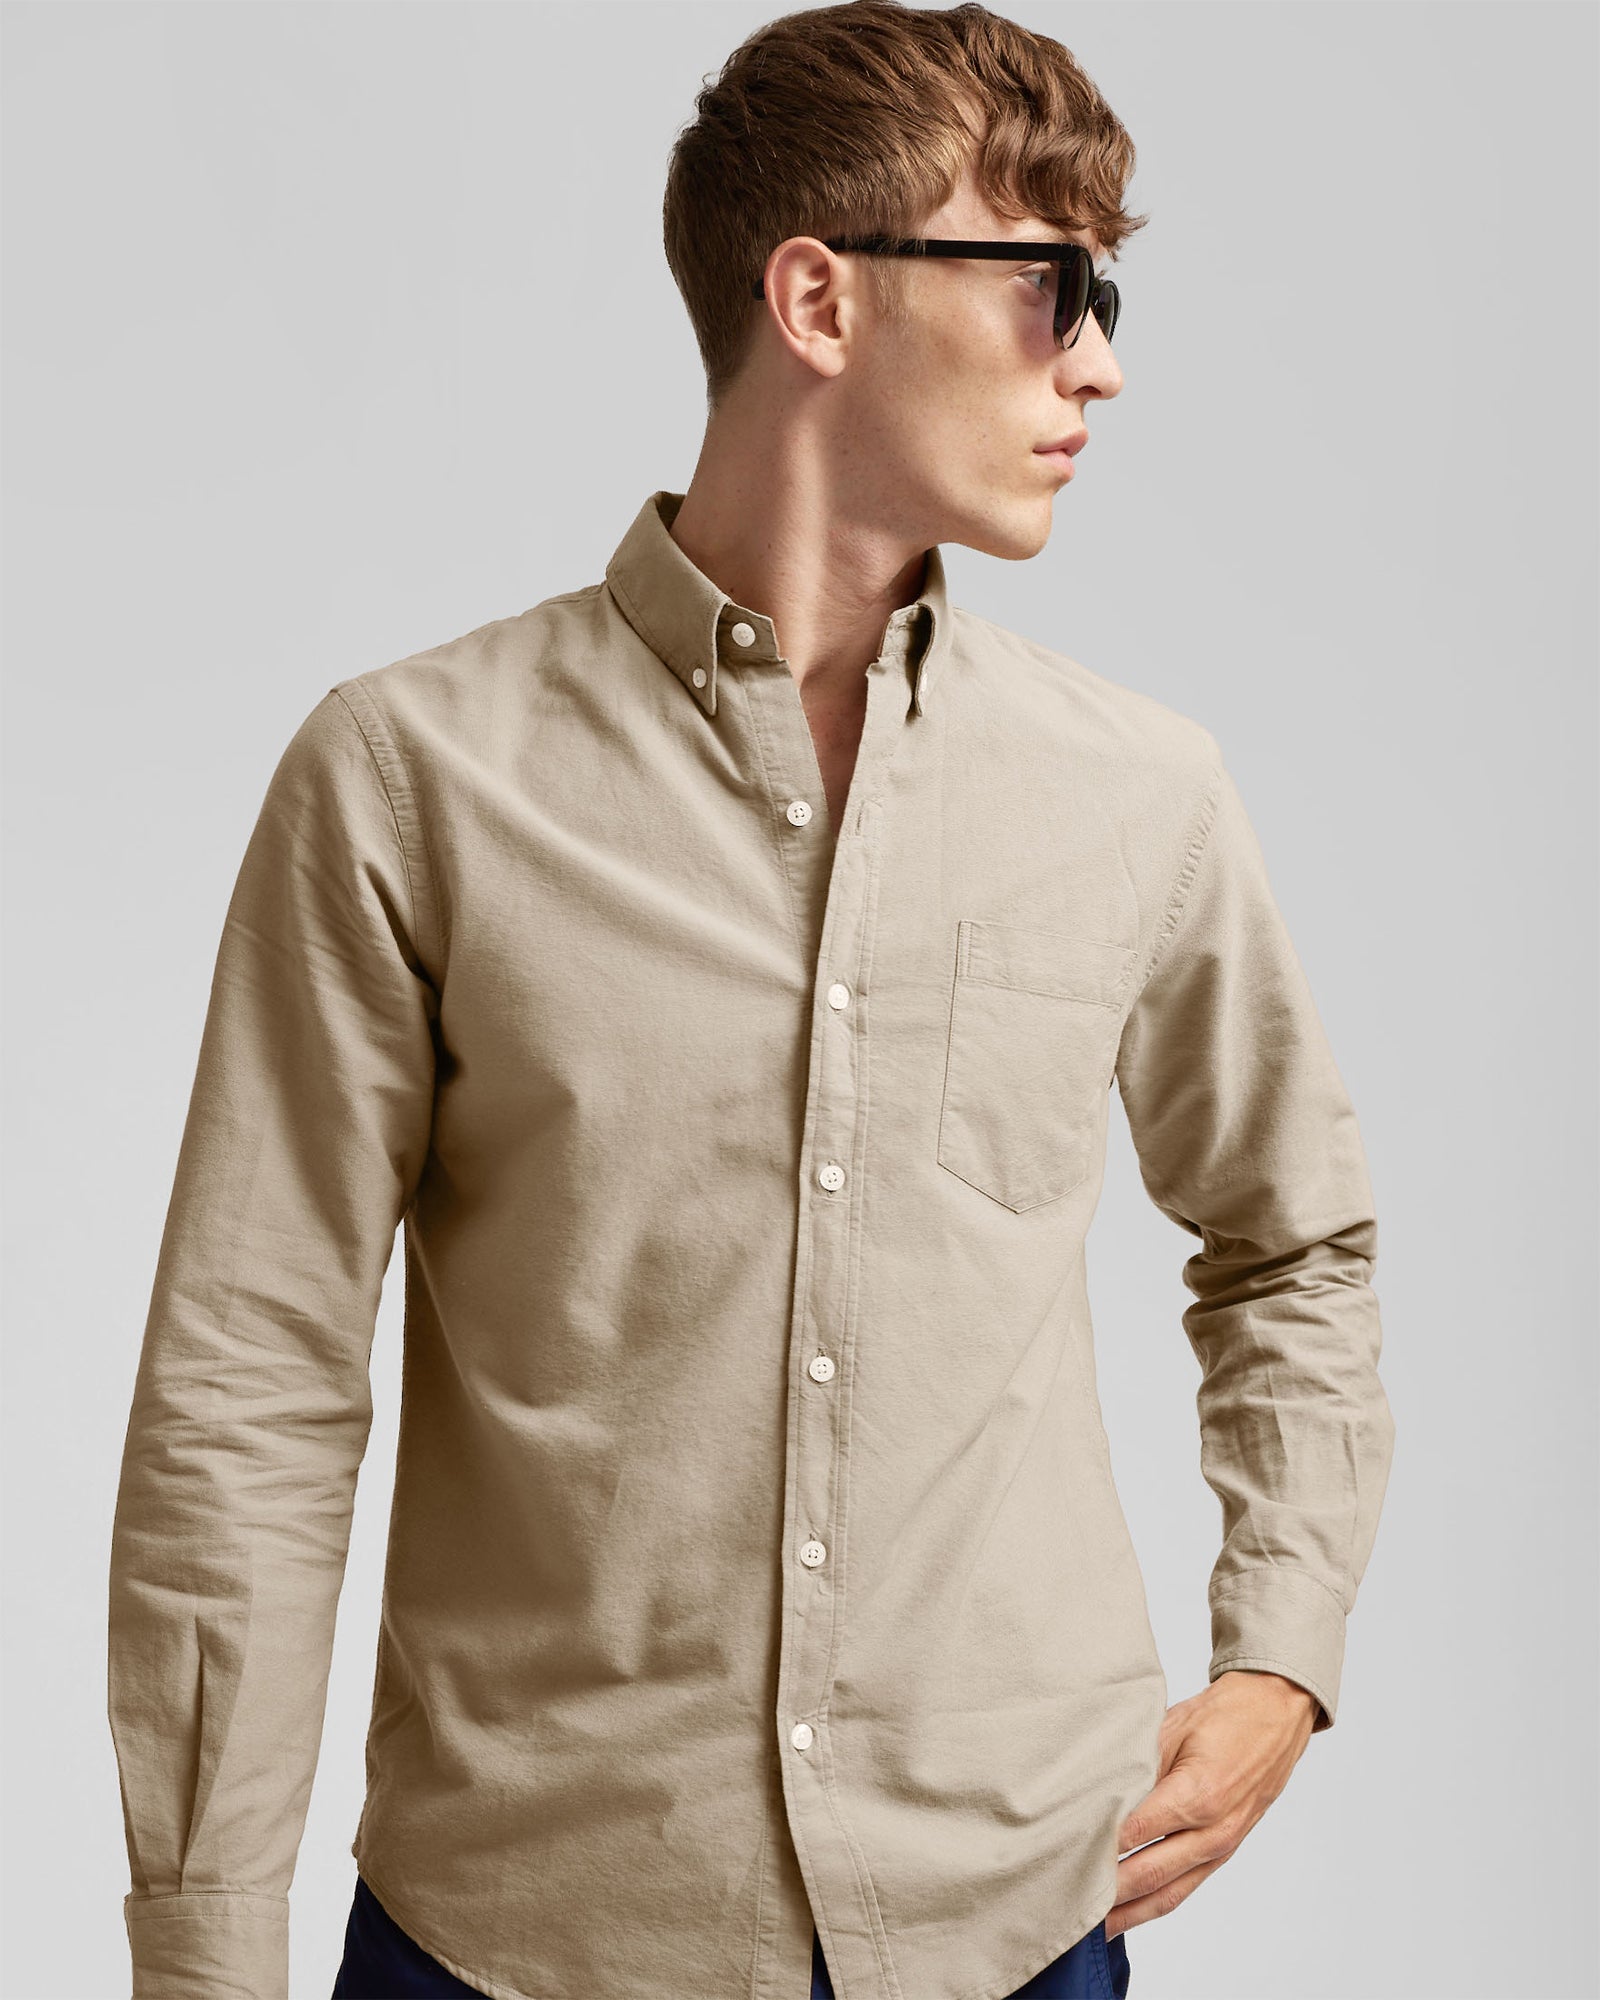 Organic Button Down Shirt - Optical White